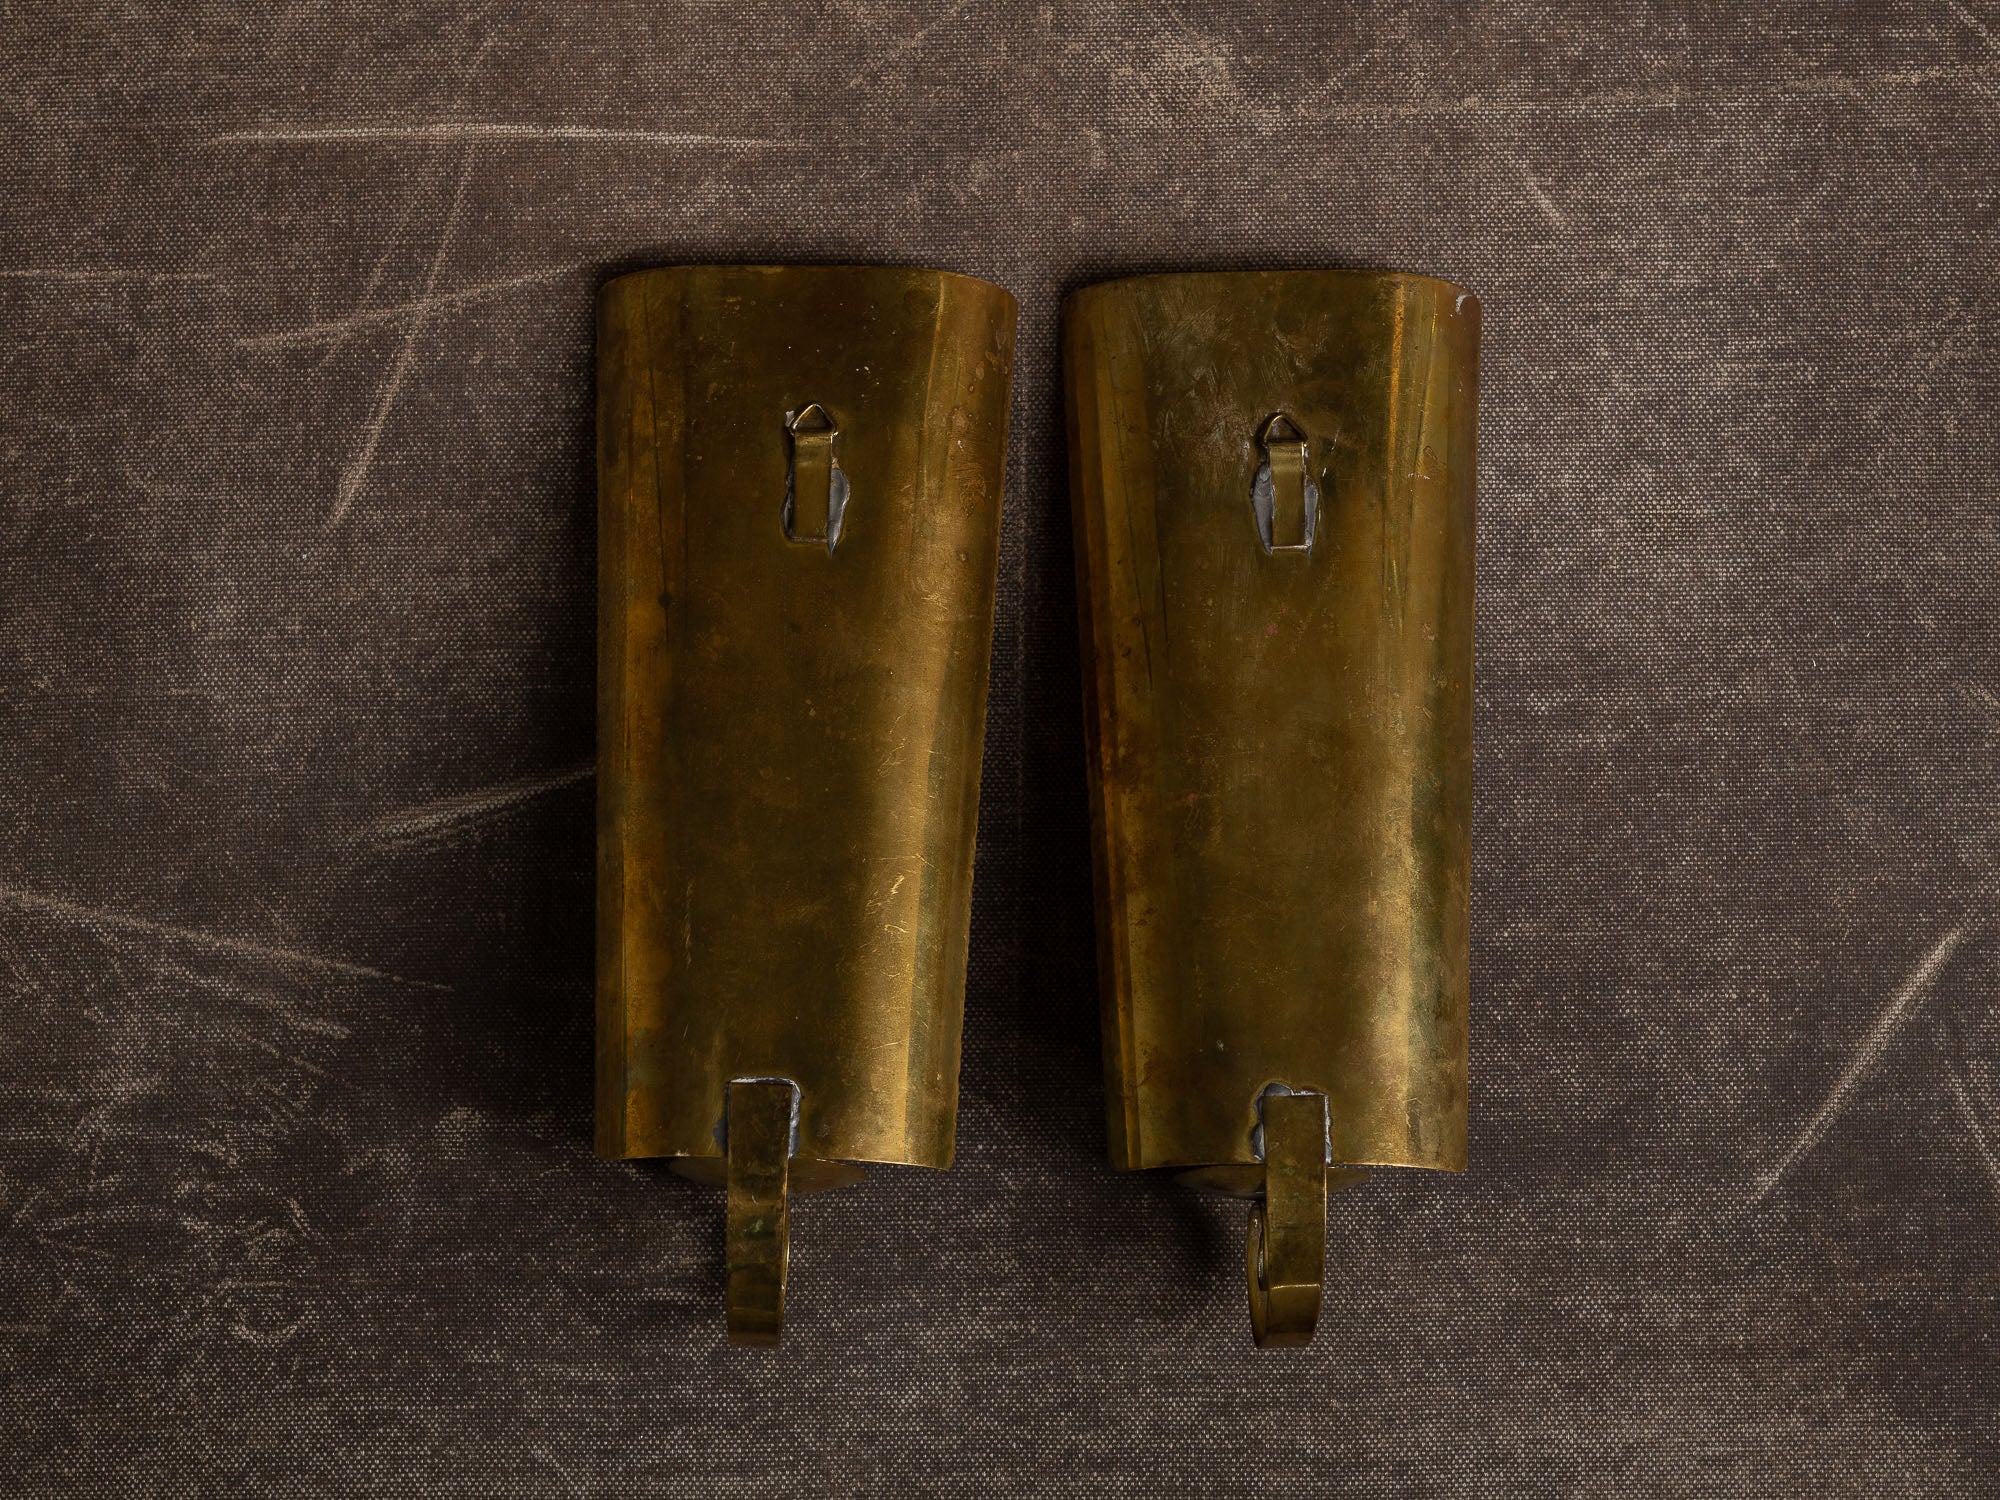 Paire de candélabres / miroirs d'appliques muraux en laiton néo-classiques, Suède (vers 1945-50)..Set of 2 neo classical brass wall hanging candle holders, Sweden (ca. 1945-50)